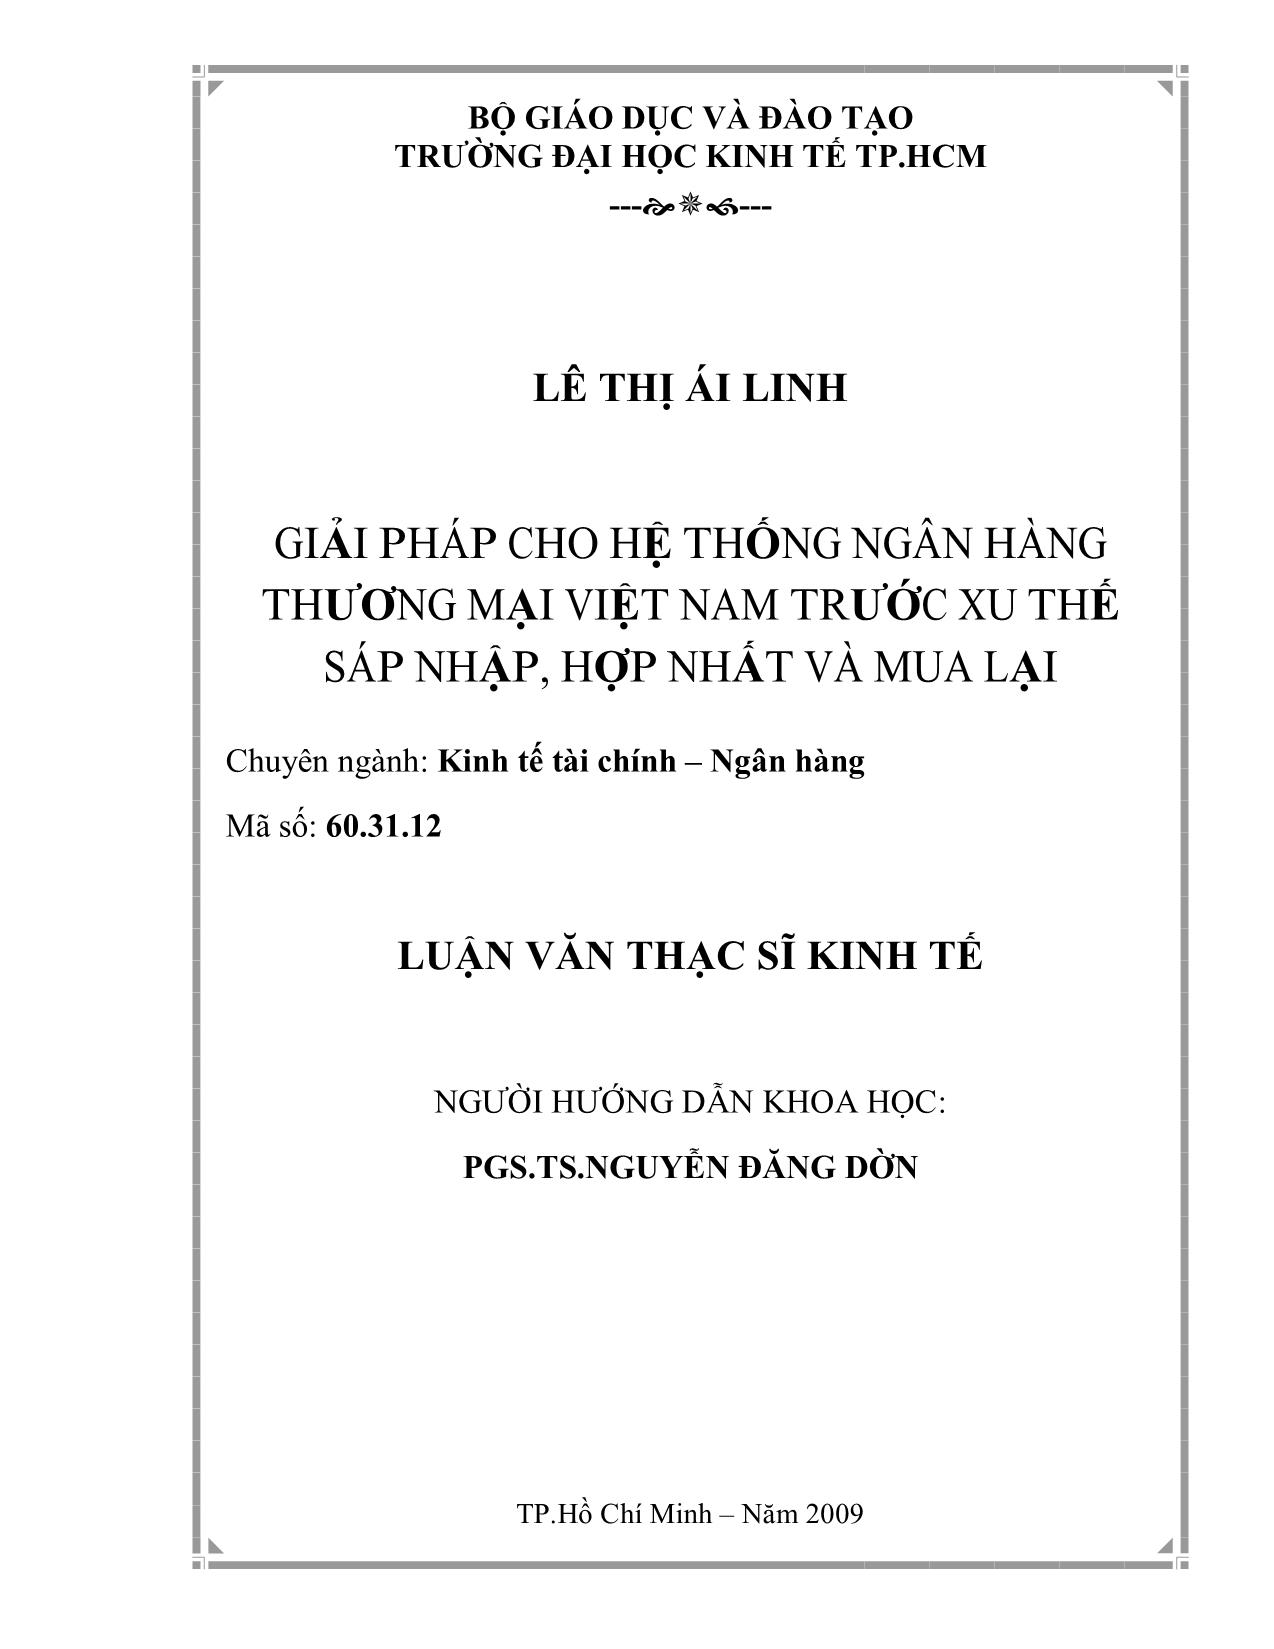 Luận văn Giải pháp cho hệ thống ngân hàng thương mại Việt Nam trước xu thế sáp nhập, hợp nhất và mua lại trang 2